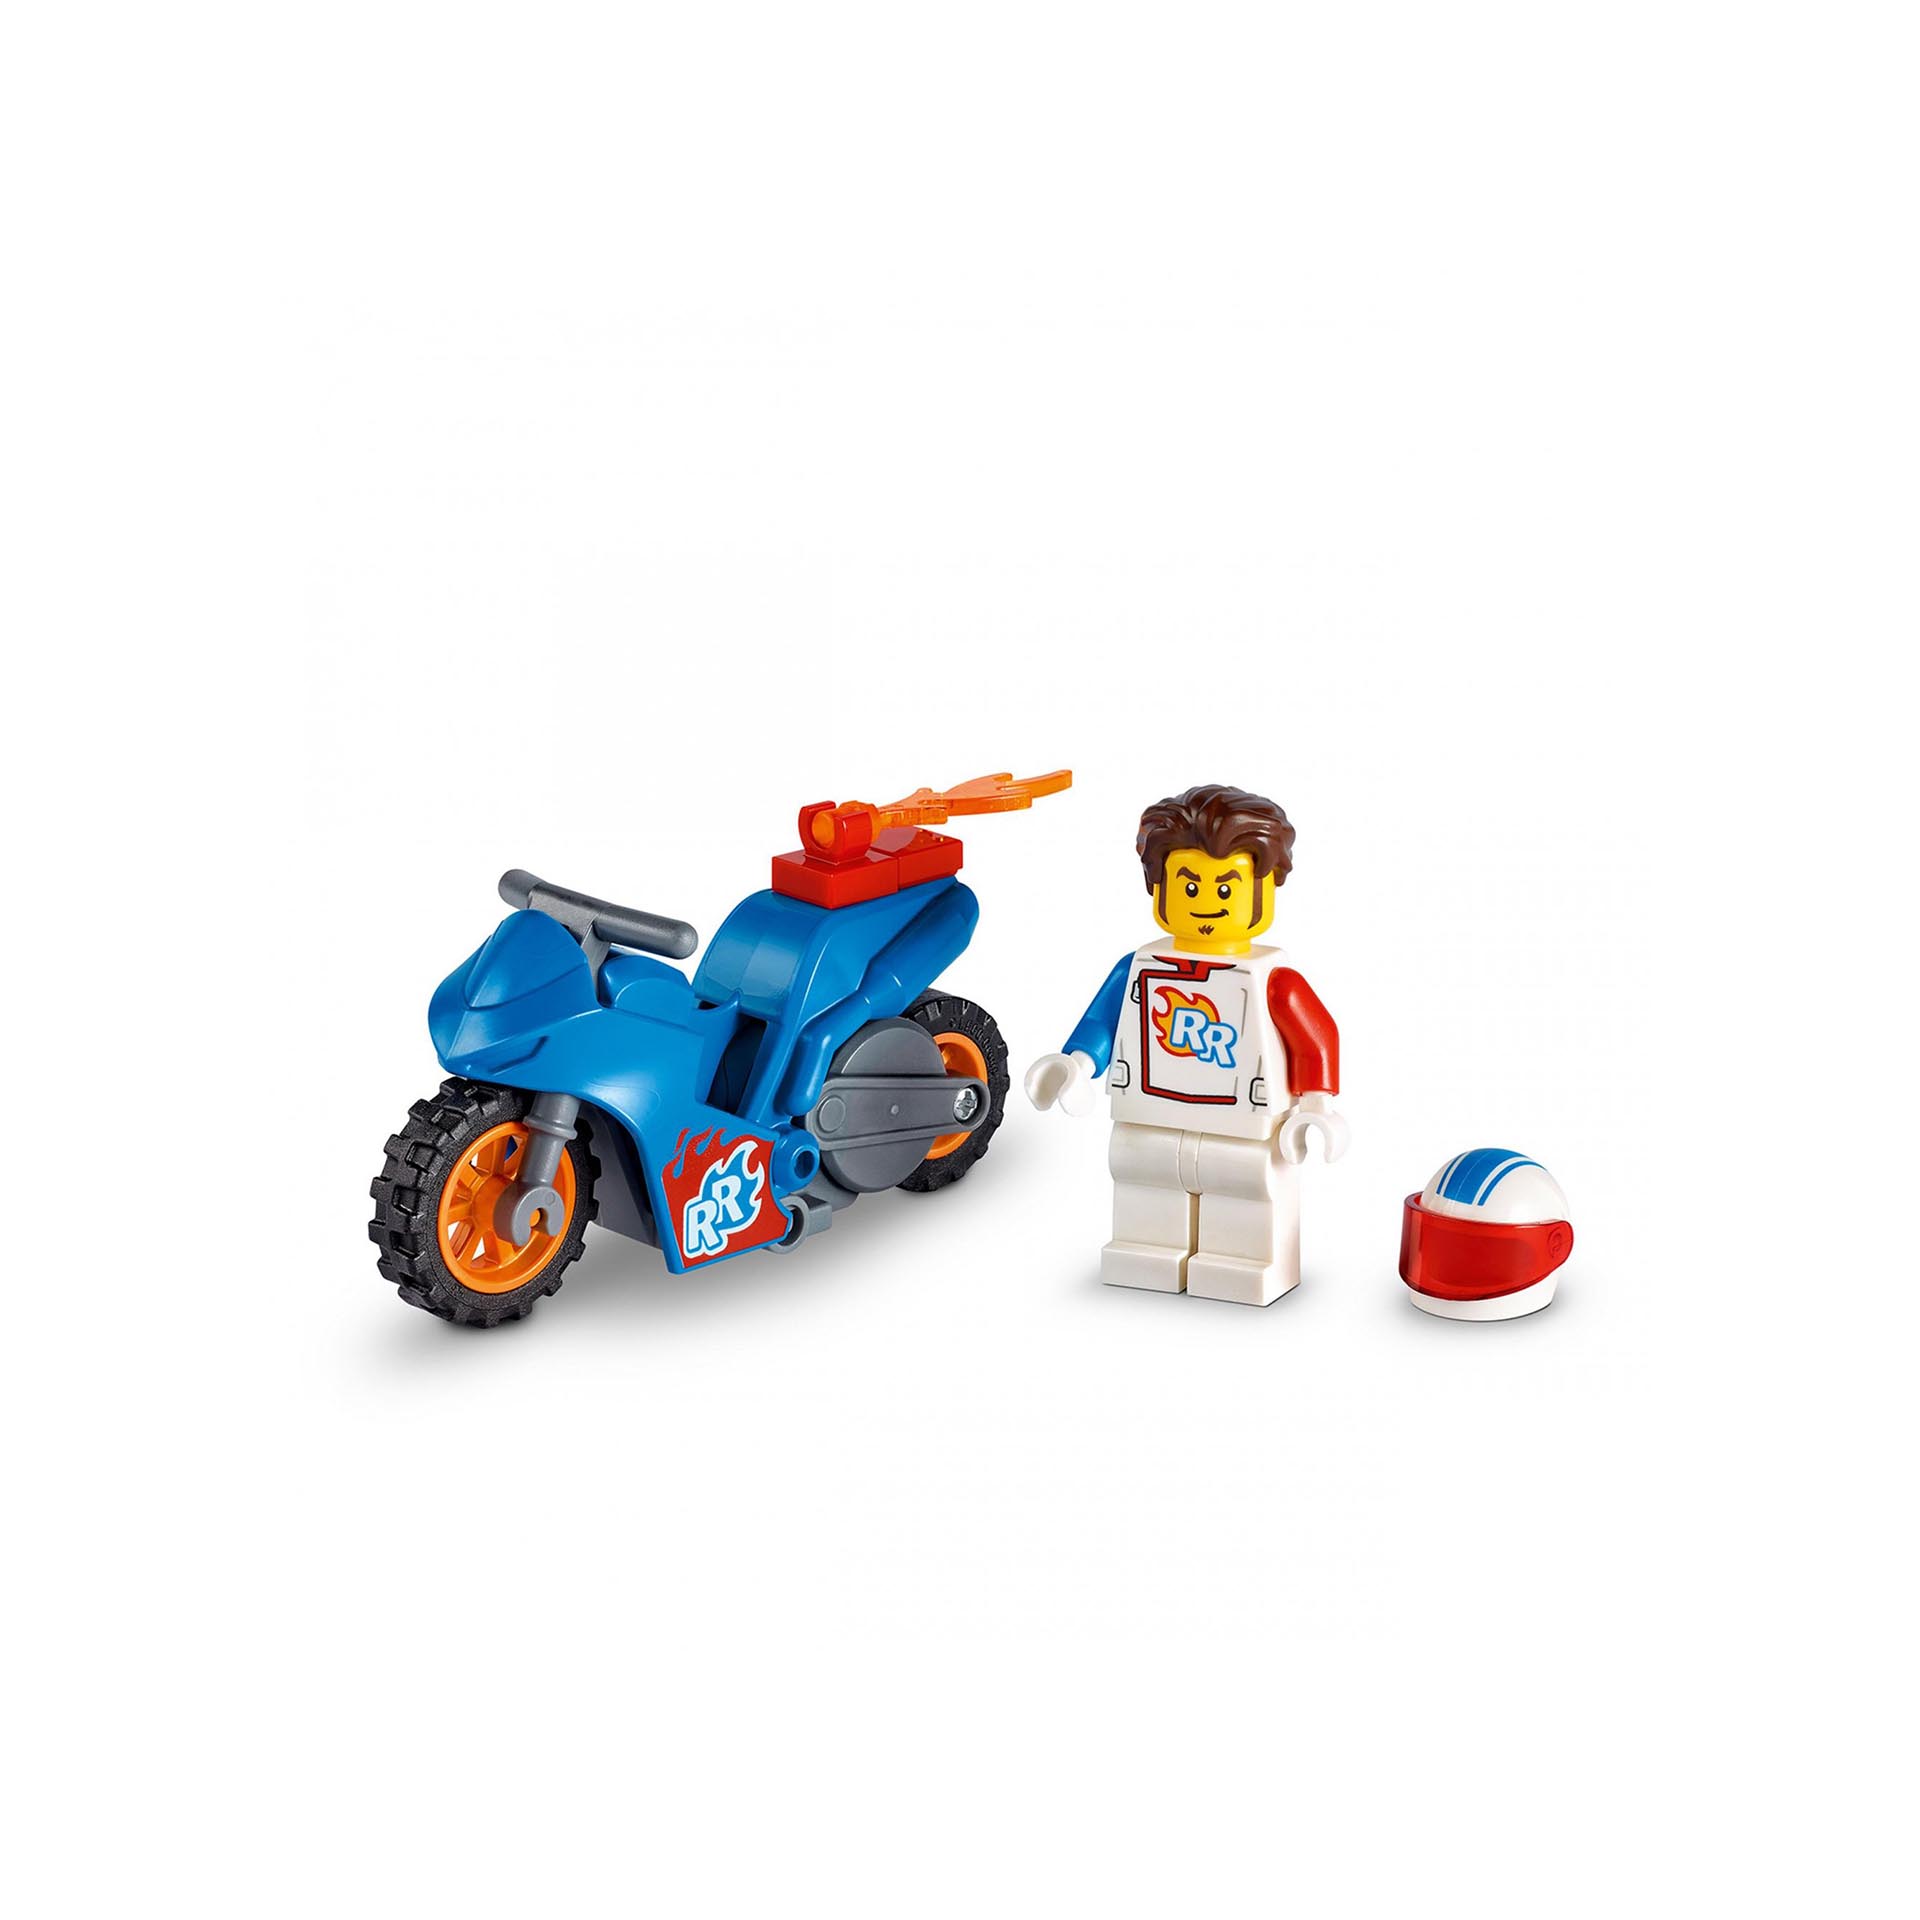 LEGO City Stuntz Stunt Bike Razzo, Set con Moto Giocattolo con Meccanismo a Spin 60298, , large